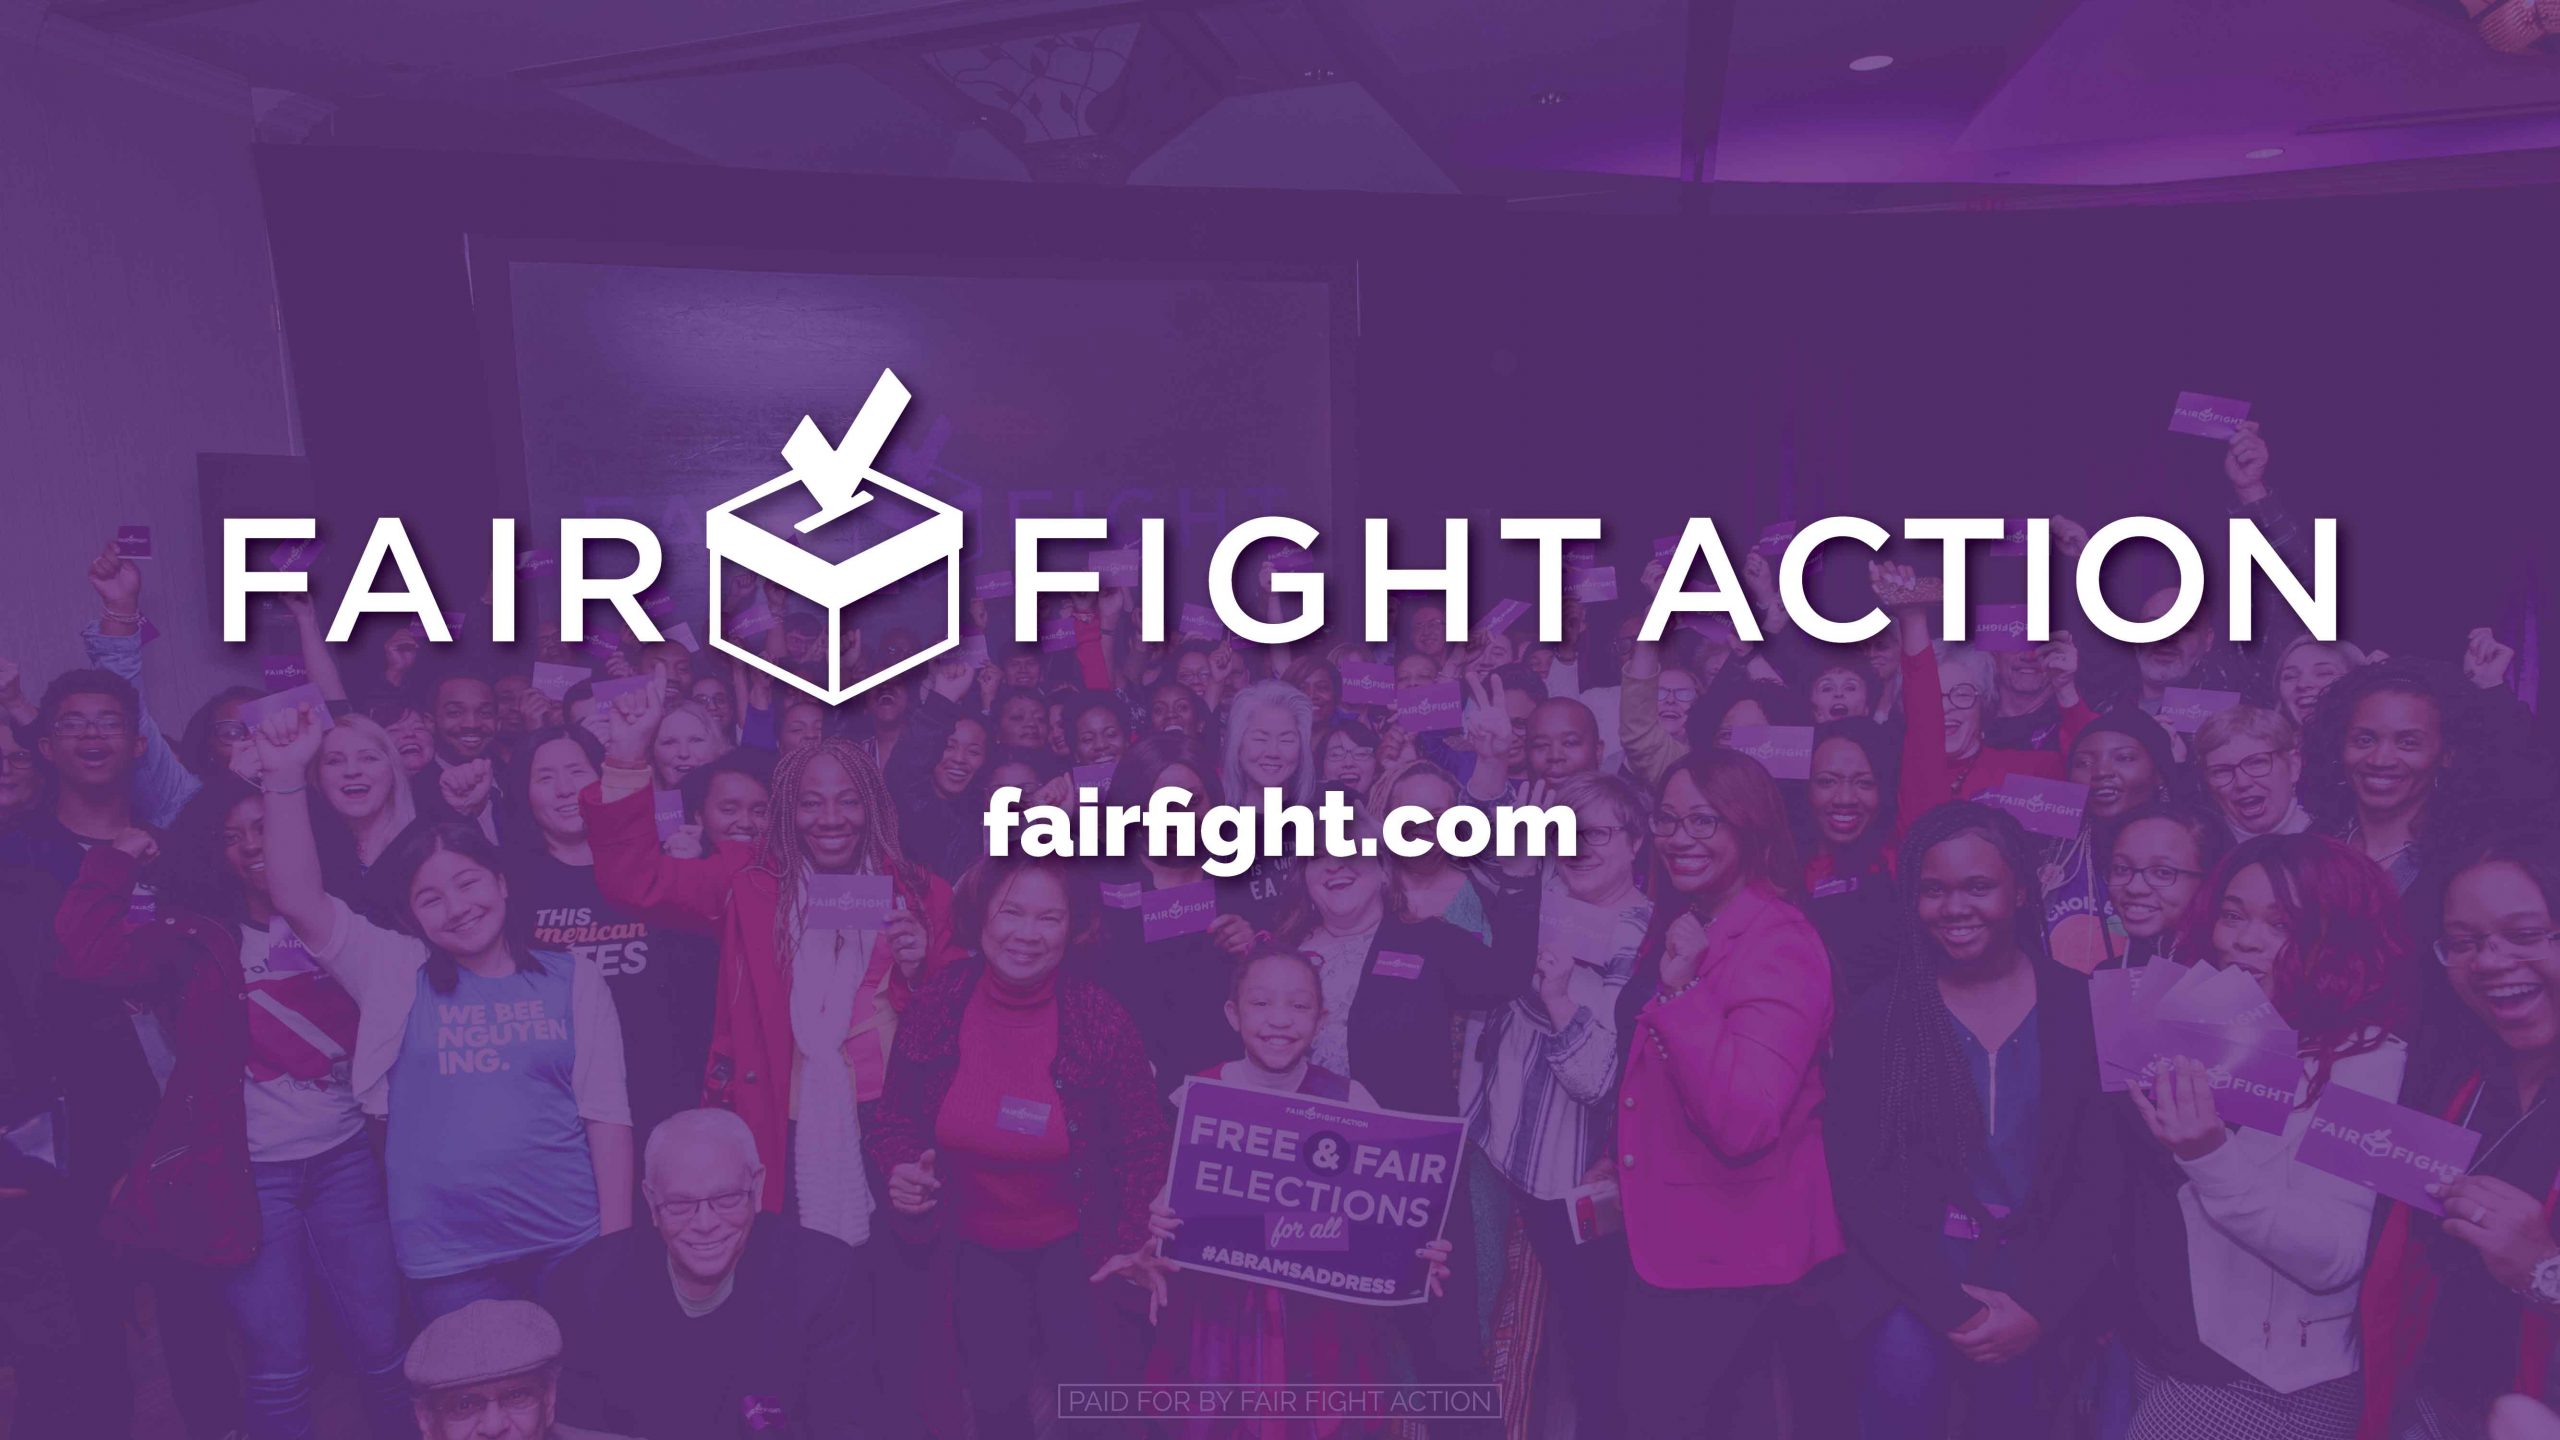 fairfight.com